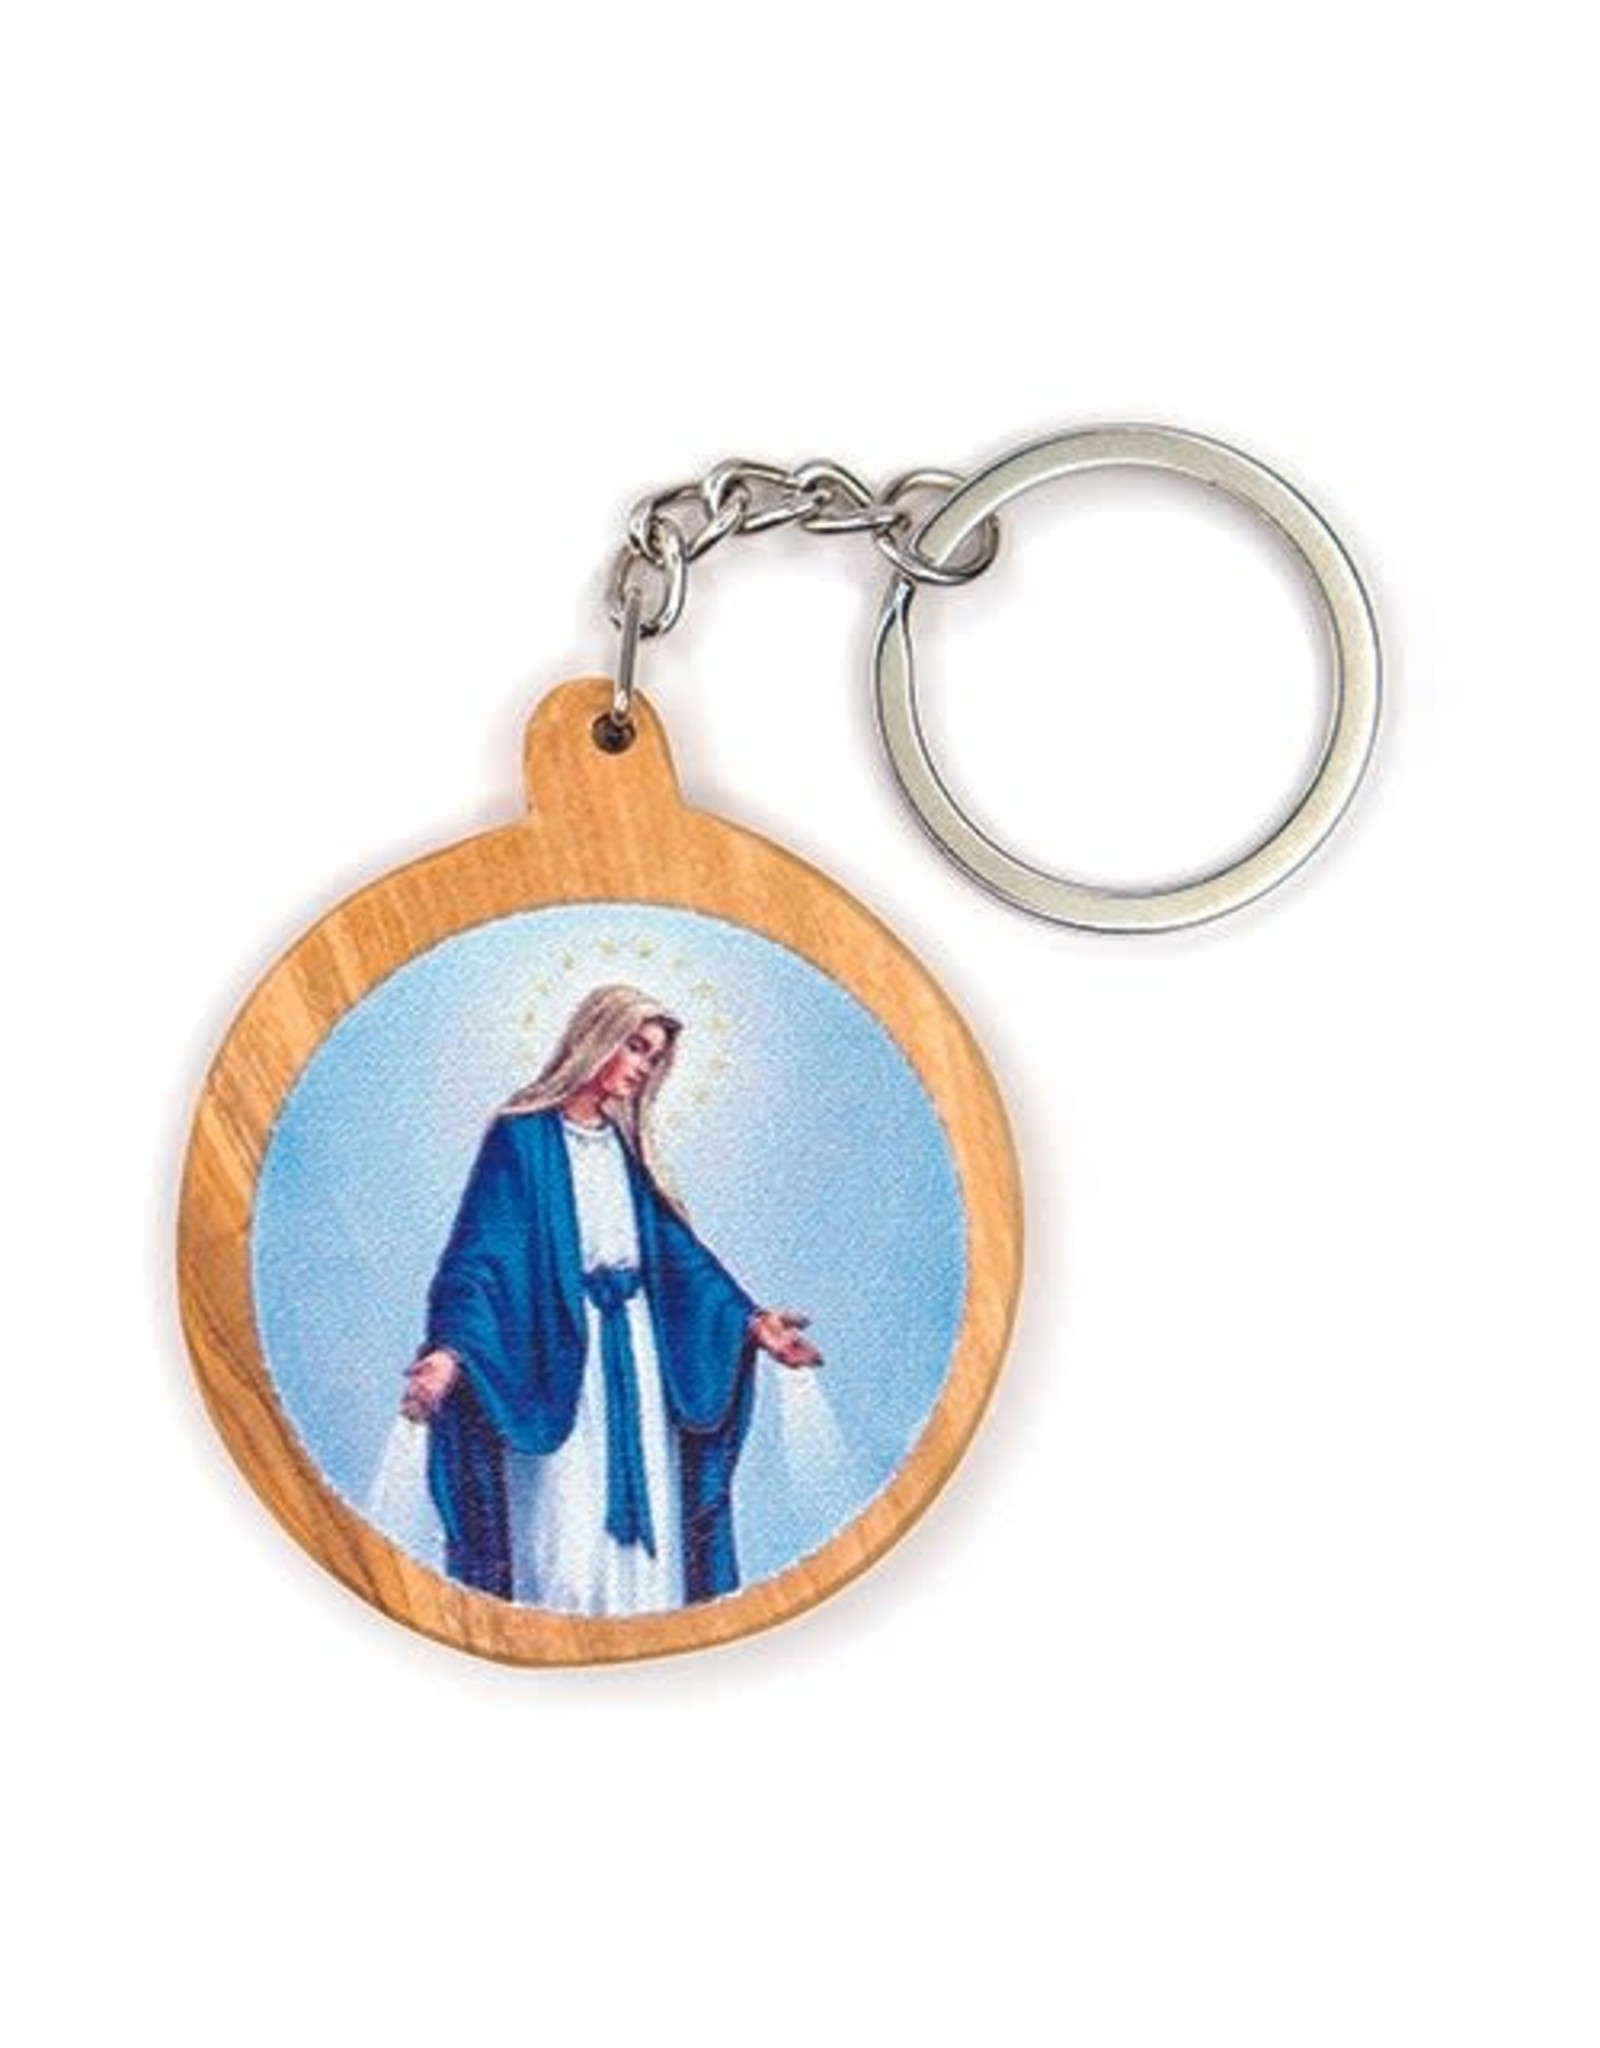 Olive Wood Catholic Keychain -